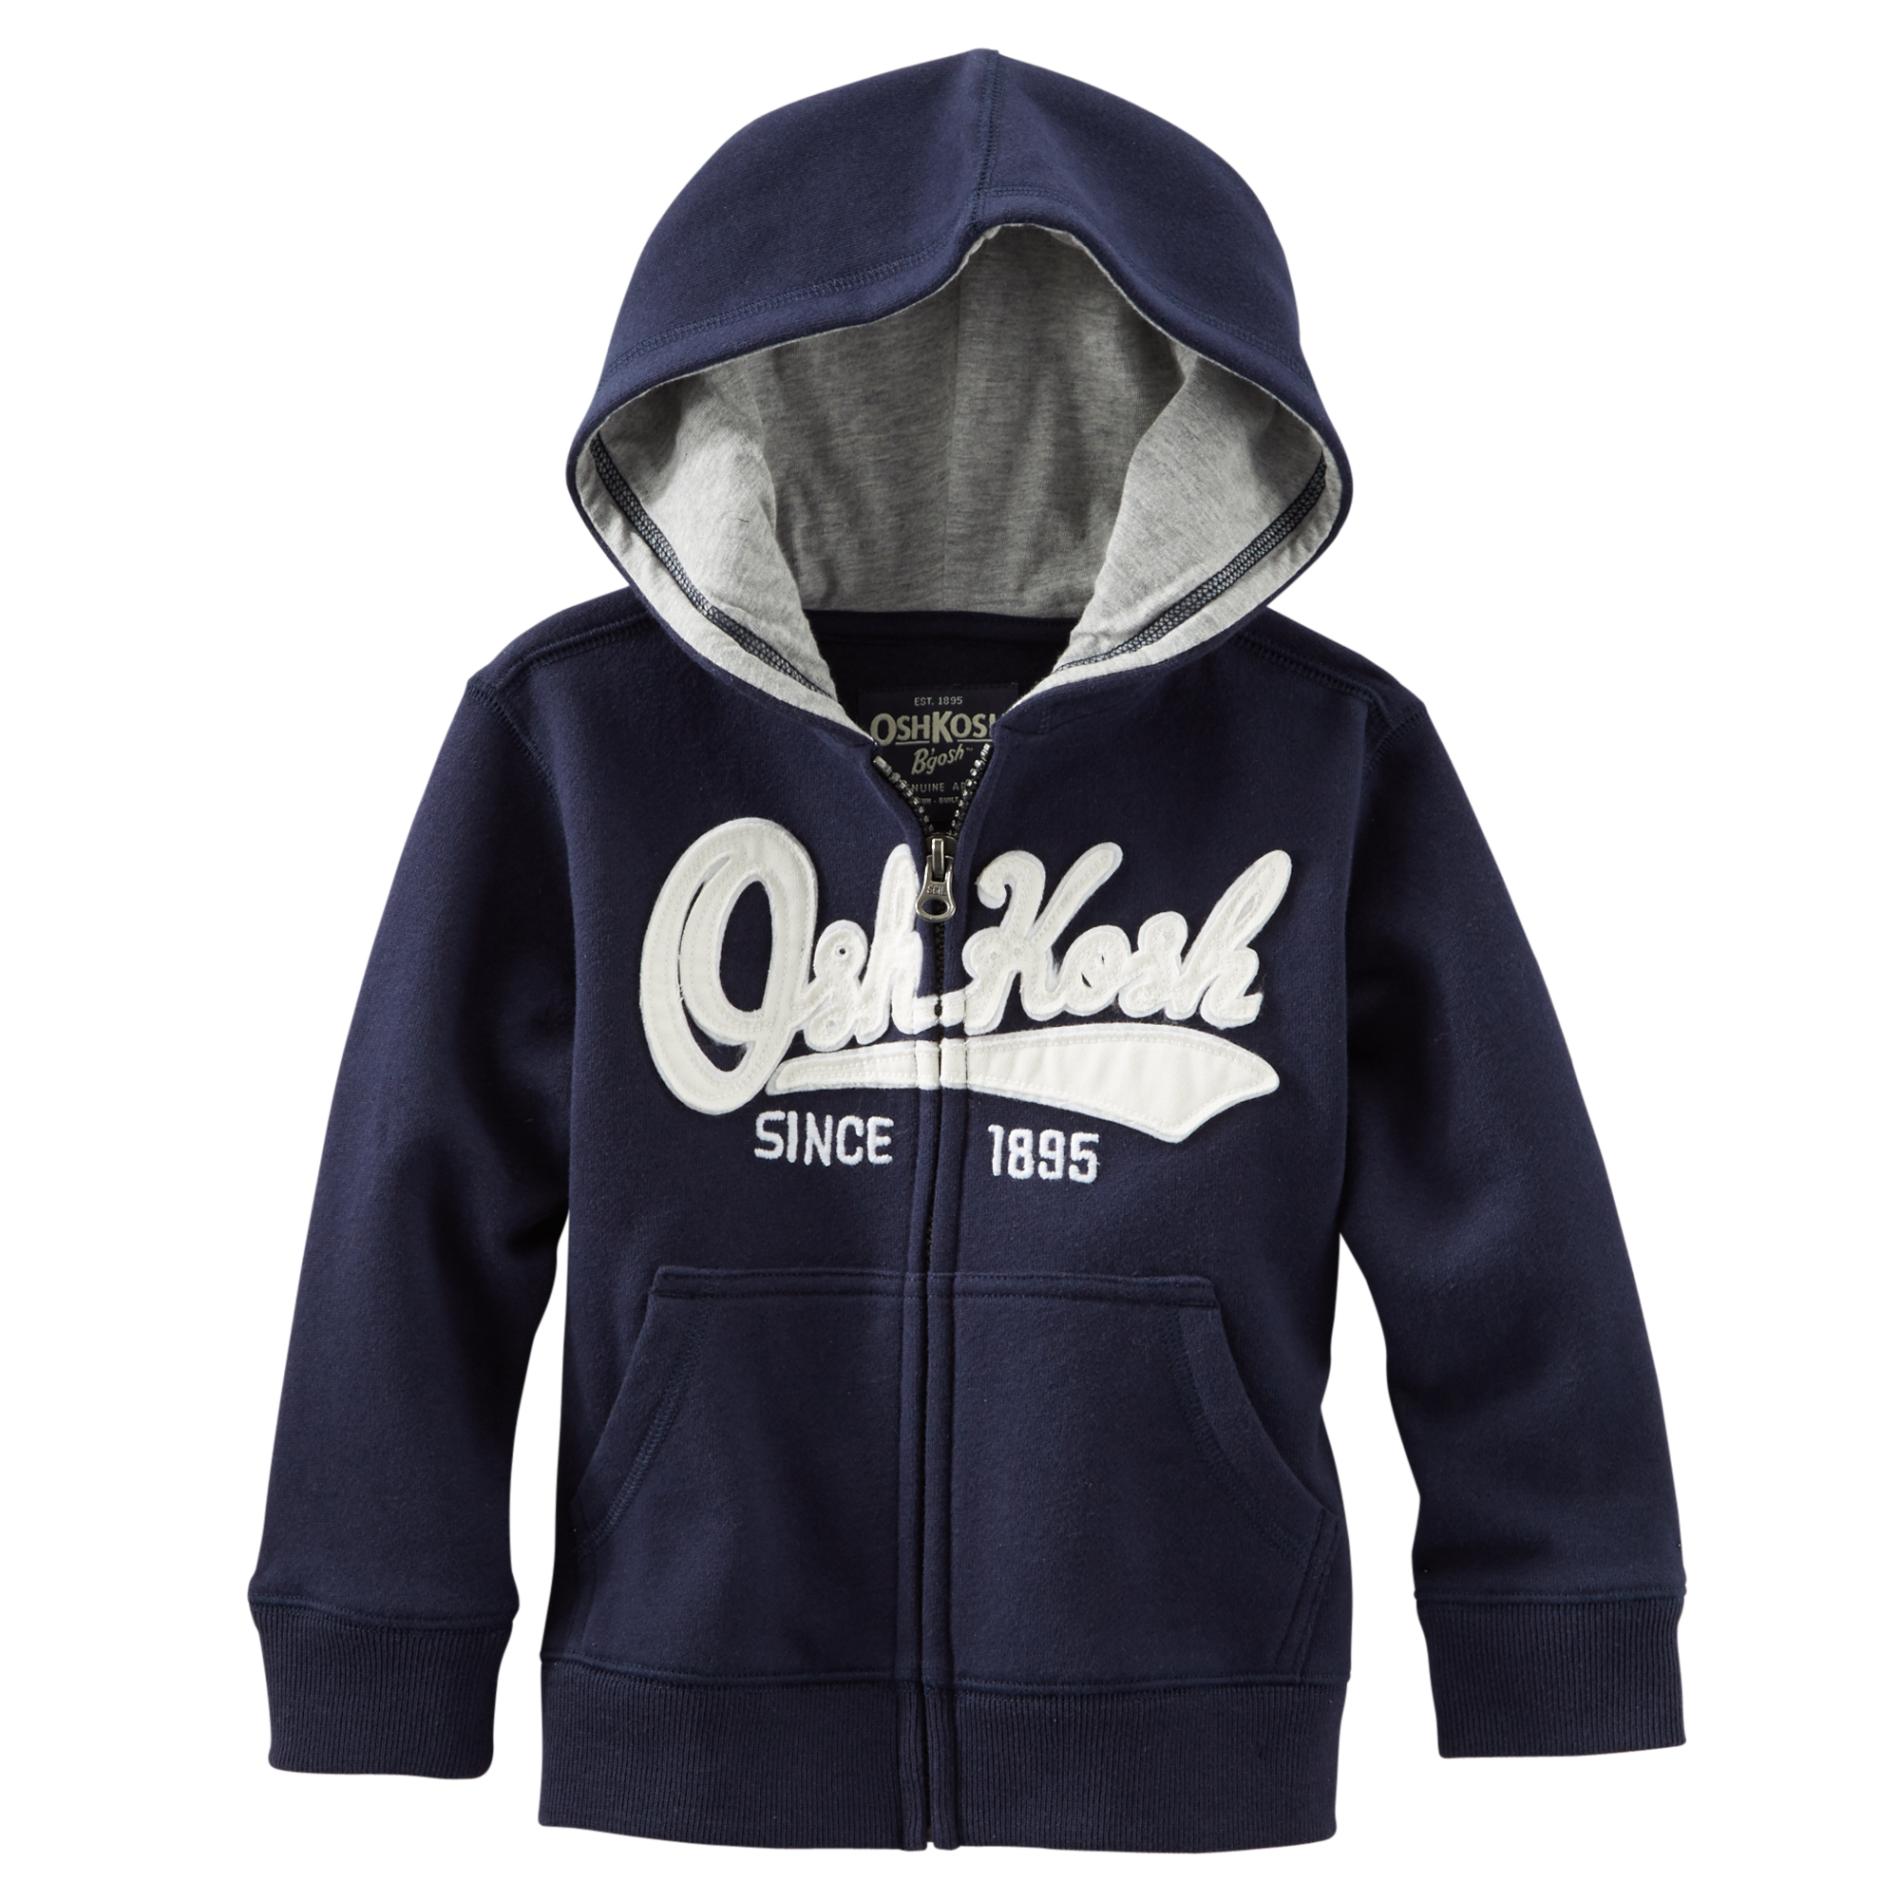 OshKosh Toddler Boy's Hoodie Jacket